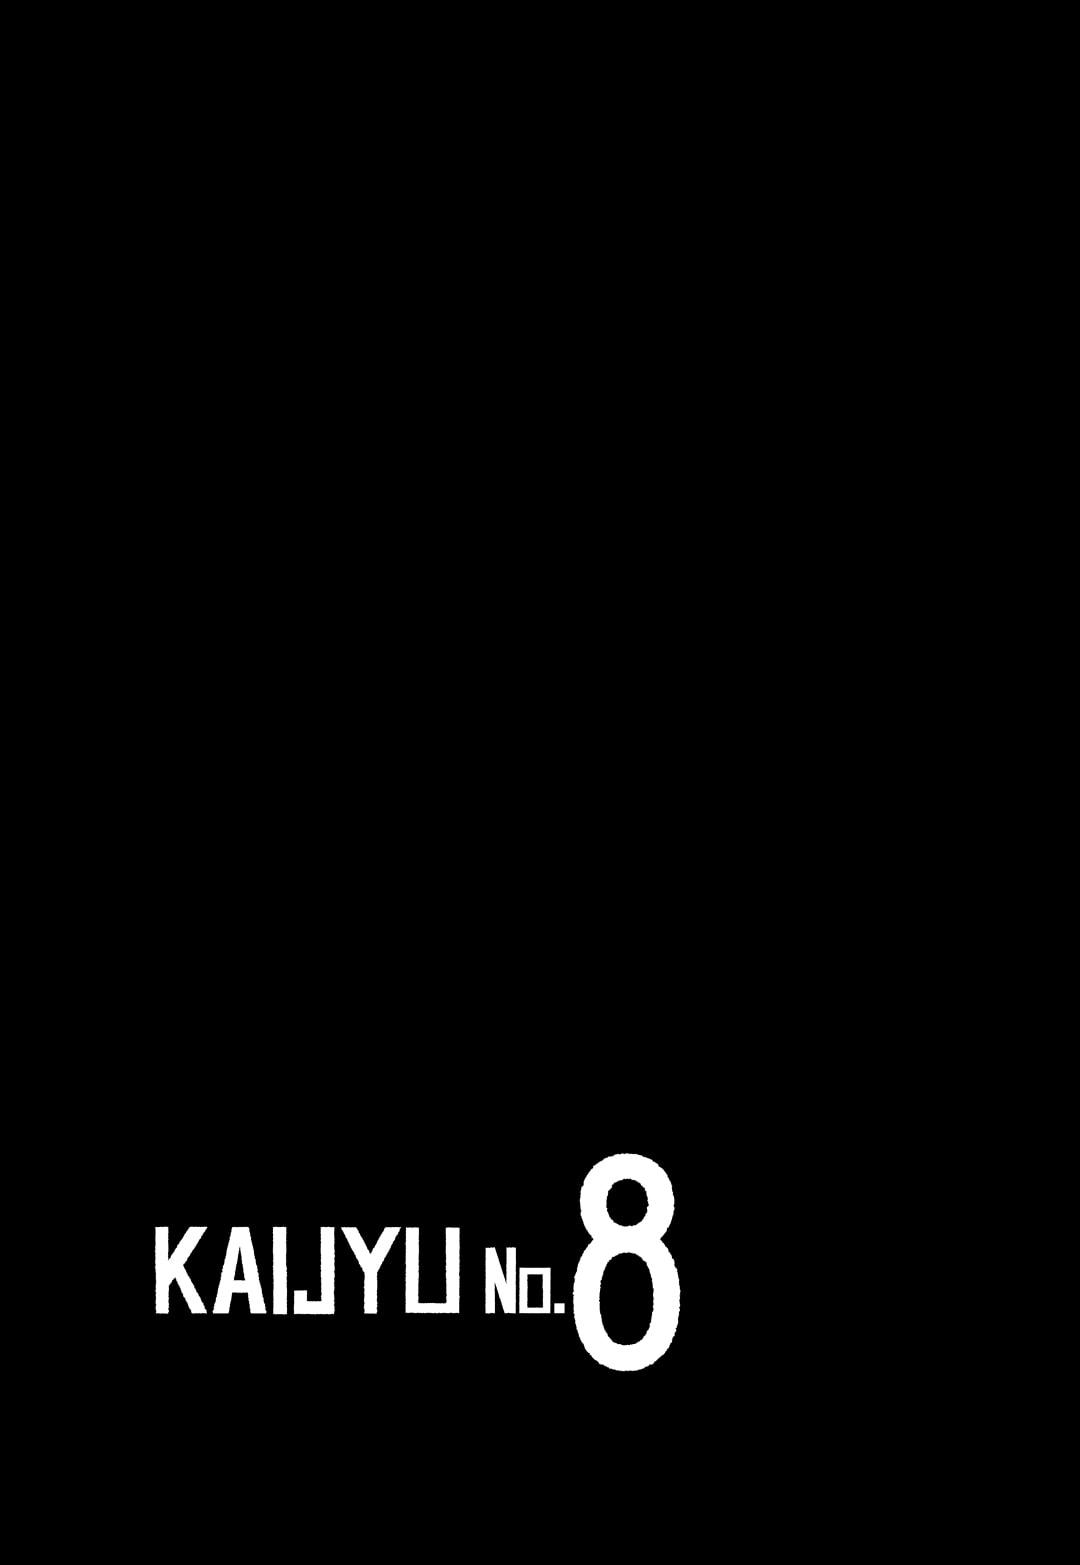 Kaiju No. 8 60 (2)